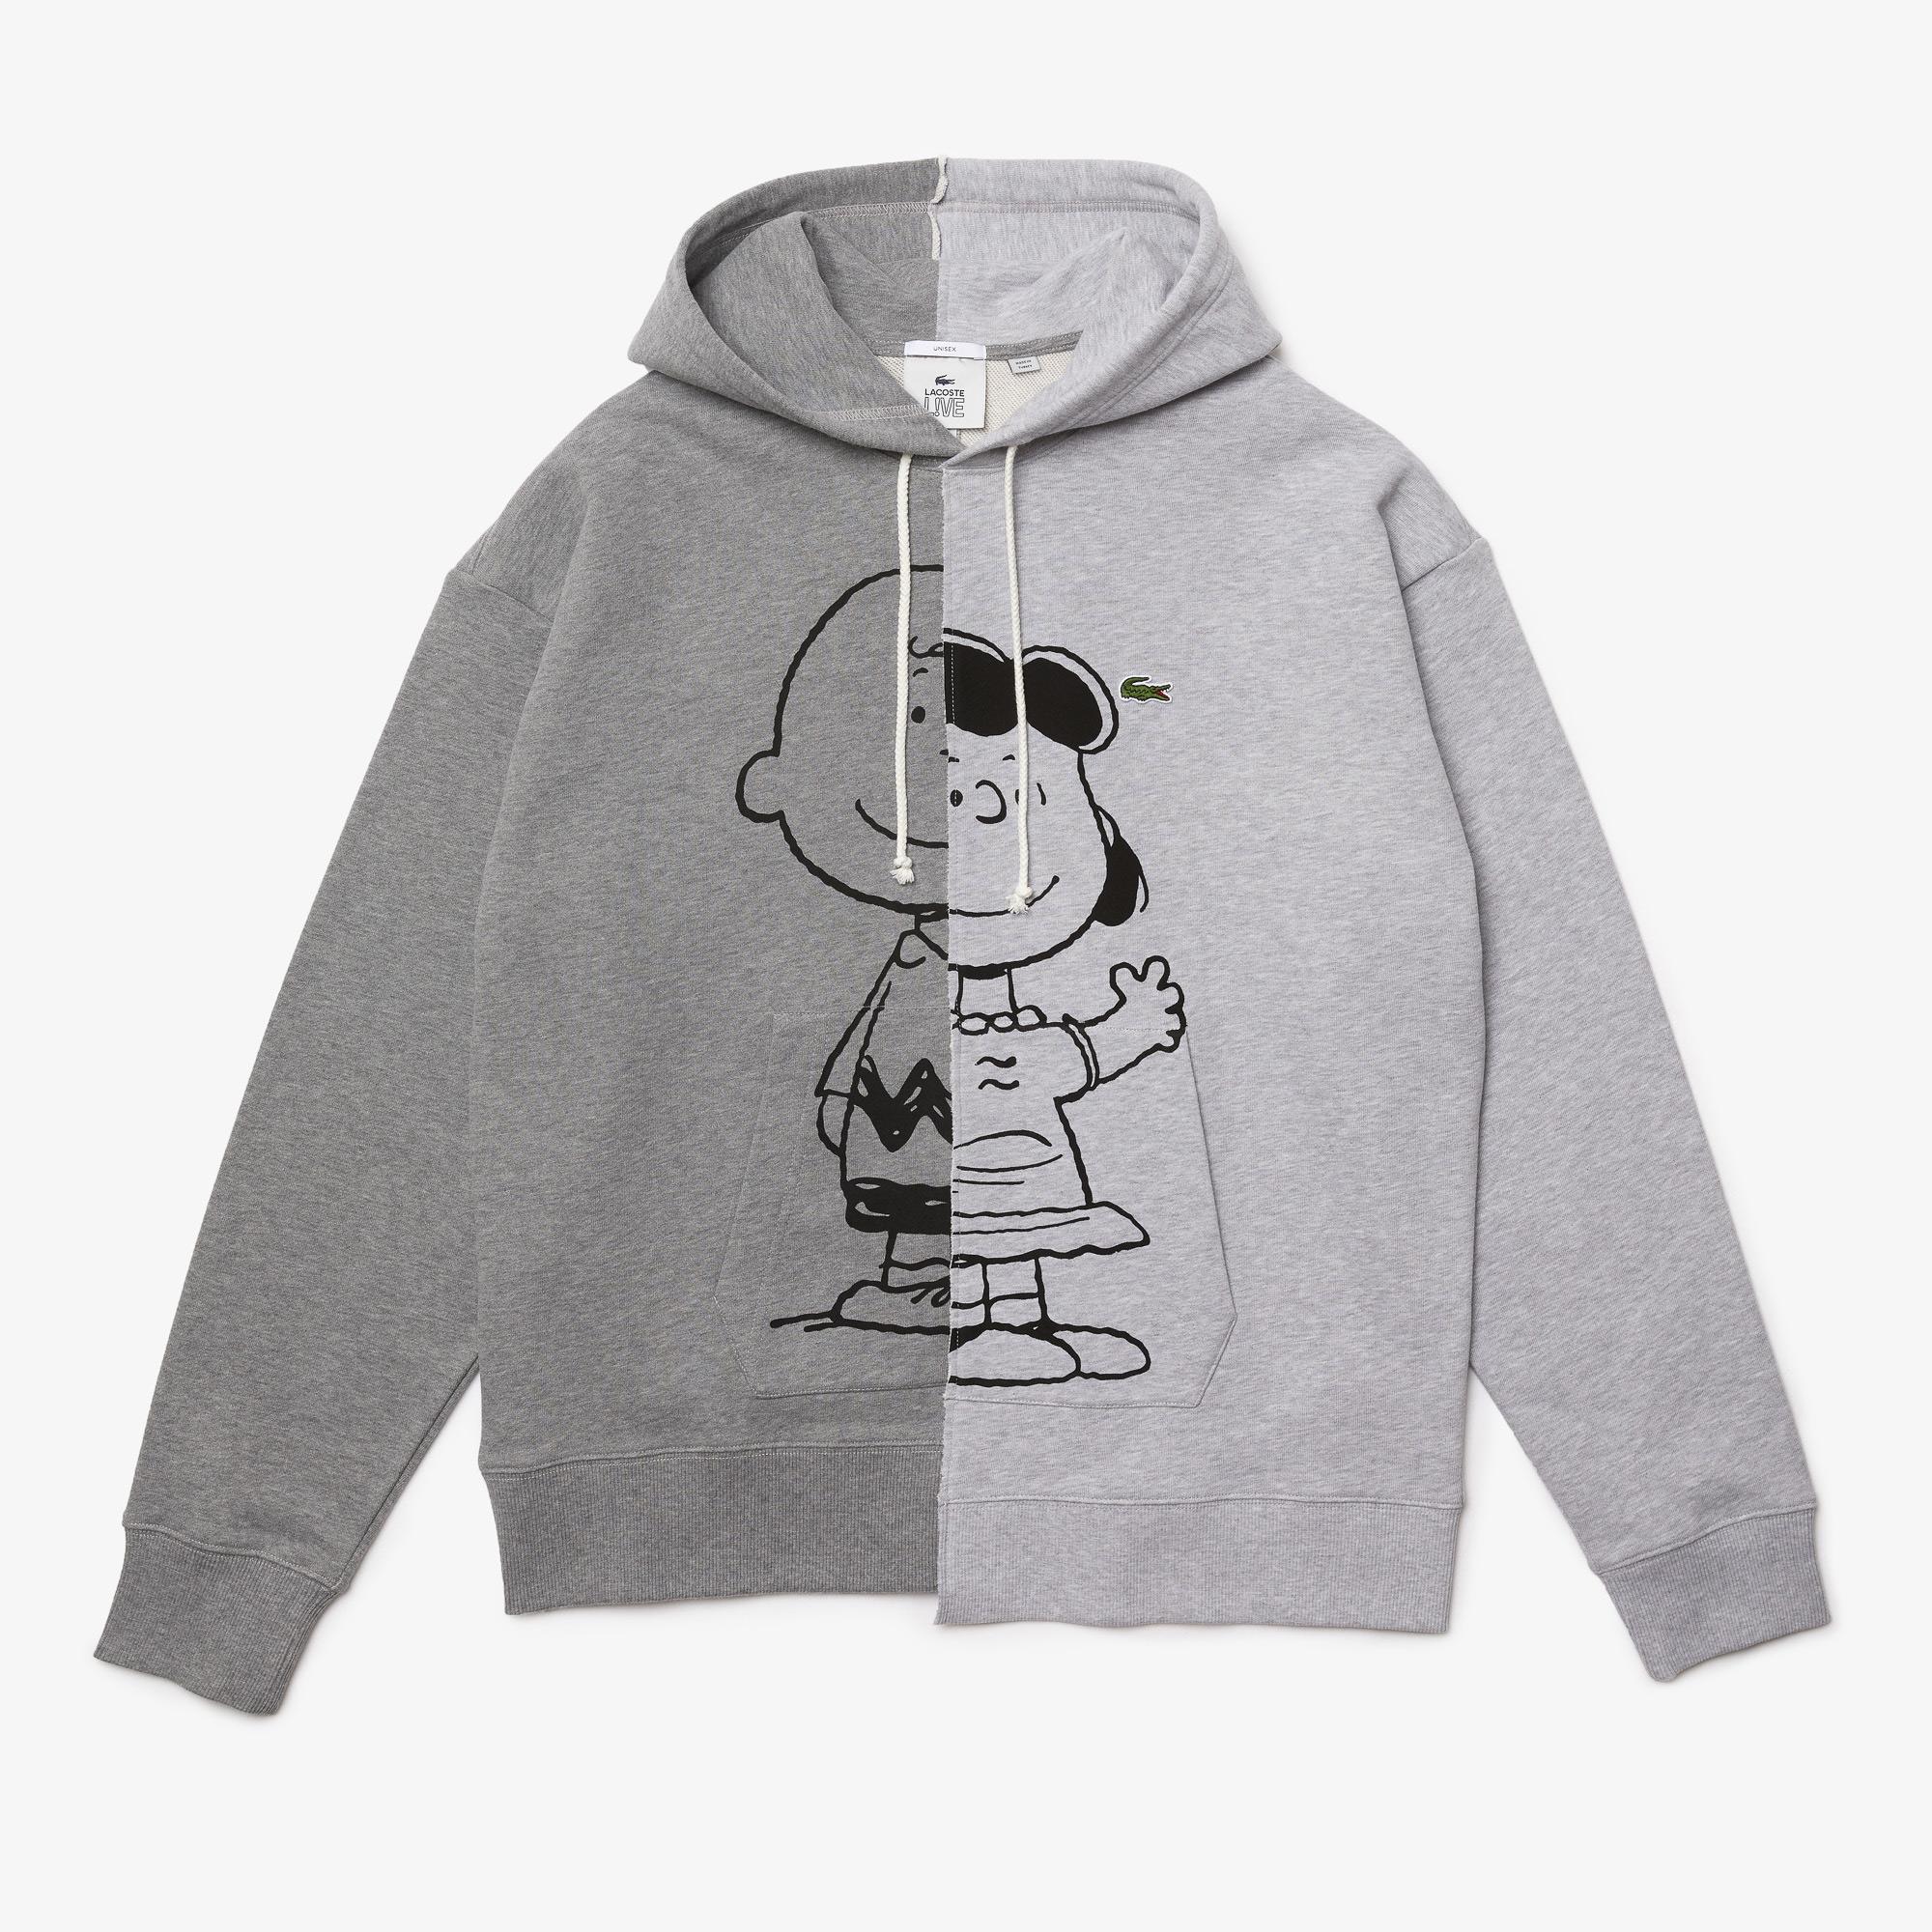  Lacoste Unisex x Peanuts Loose Fit Hooded Sweatshirt